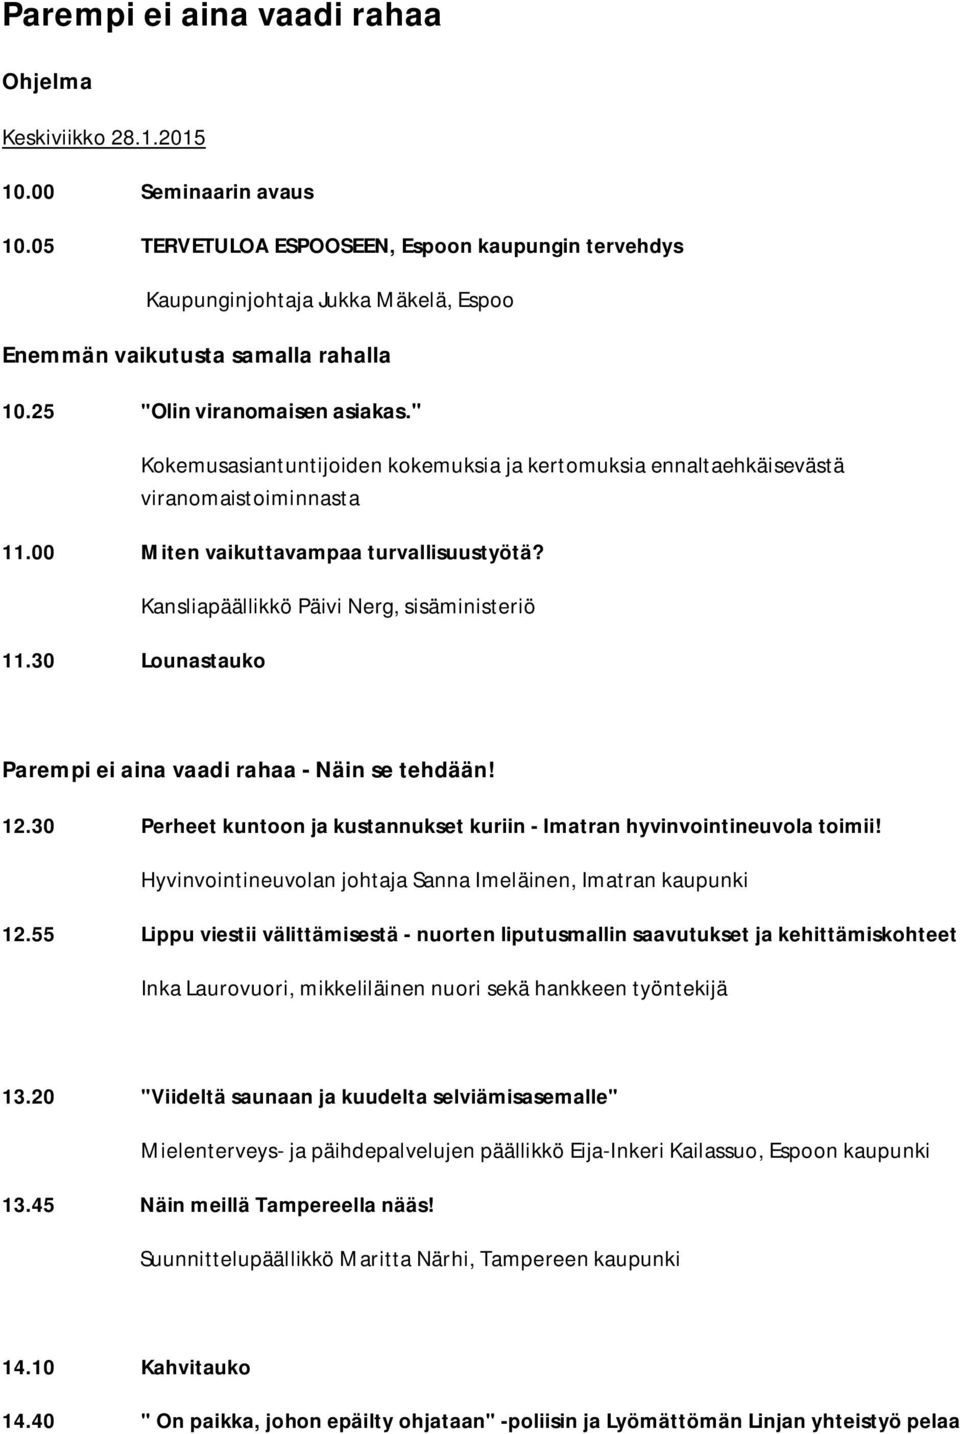 " Kokemusasiantuntijoiden kokemuksia ja kertomuksia ennaltaehkäisevästä viranomaistoiminnasta 11.